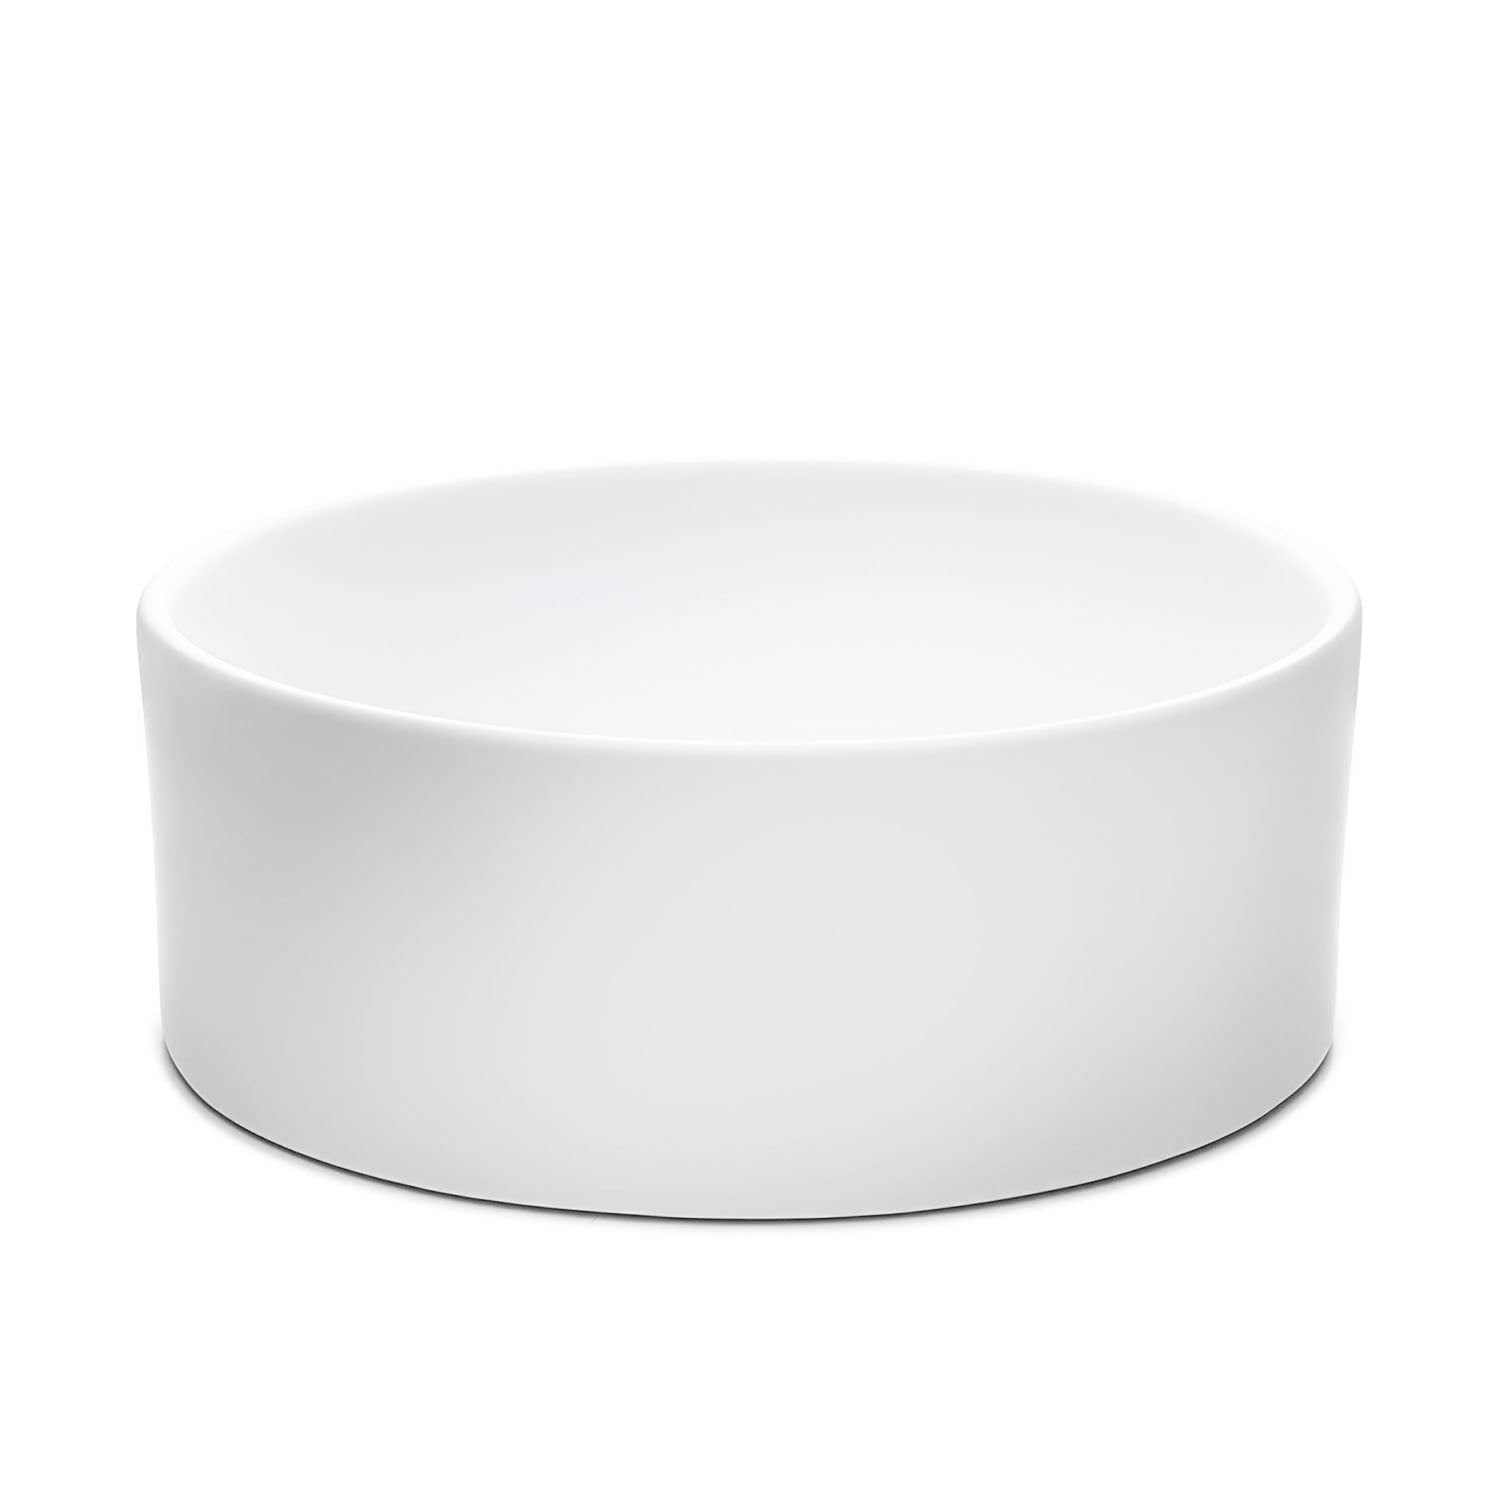 Chelsey Waschbecken in Weiß Matt aus feinster Keramik als Aufsatzwaschbecken Rund 400 x 400 x 145 mm